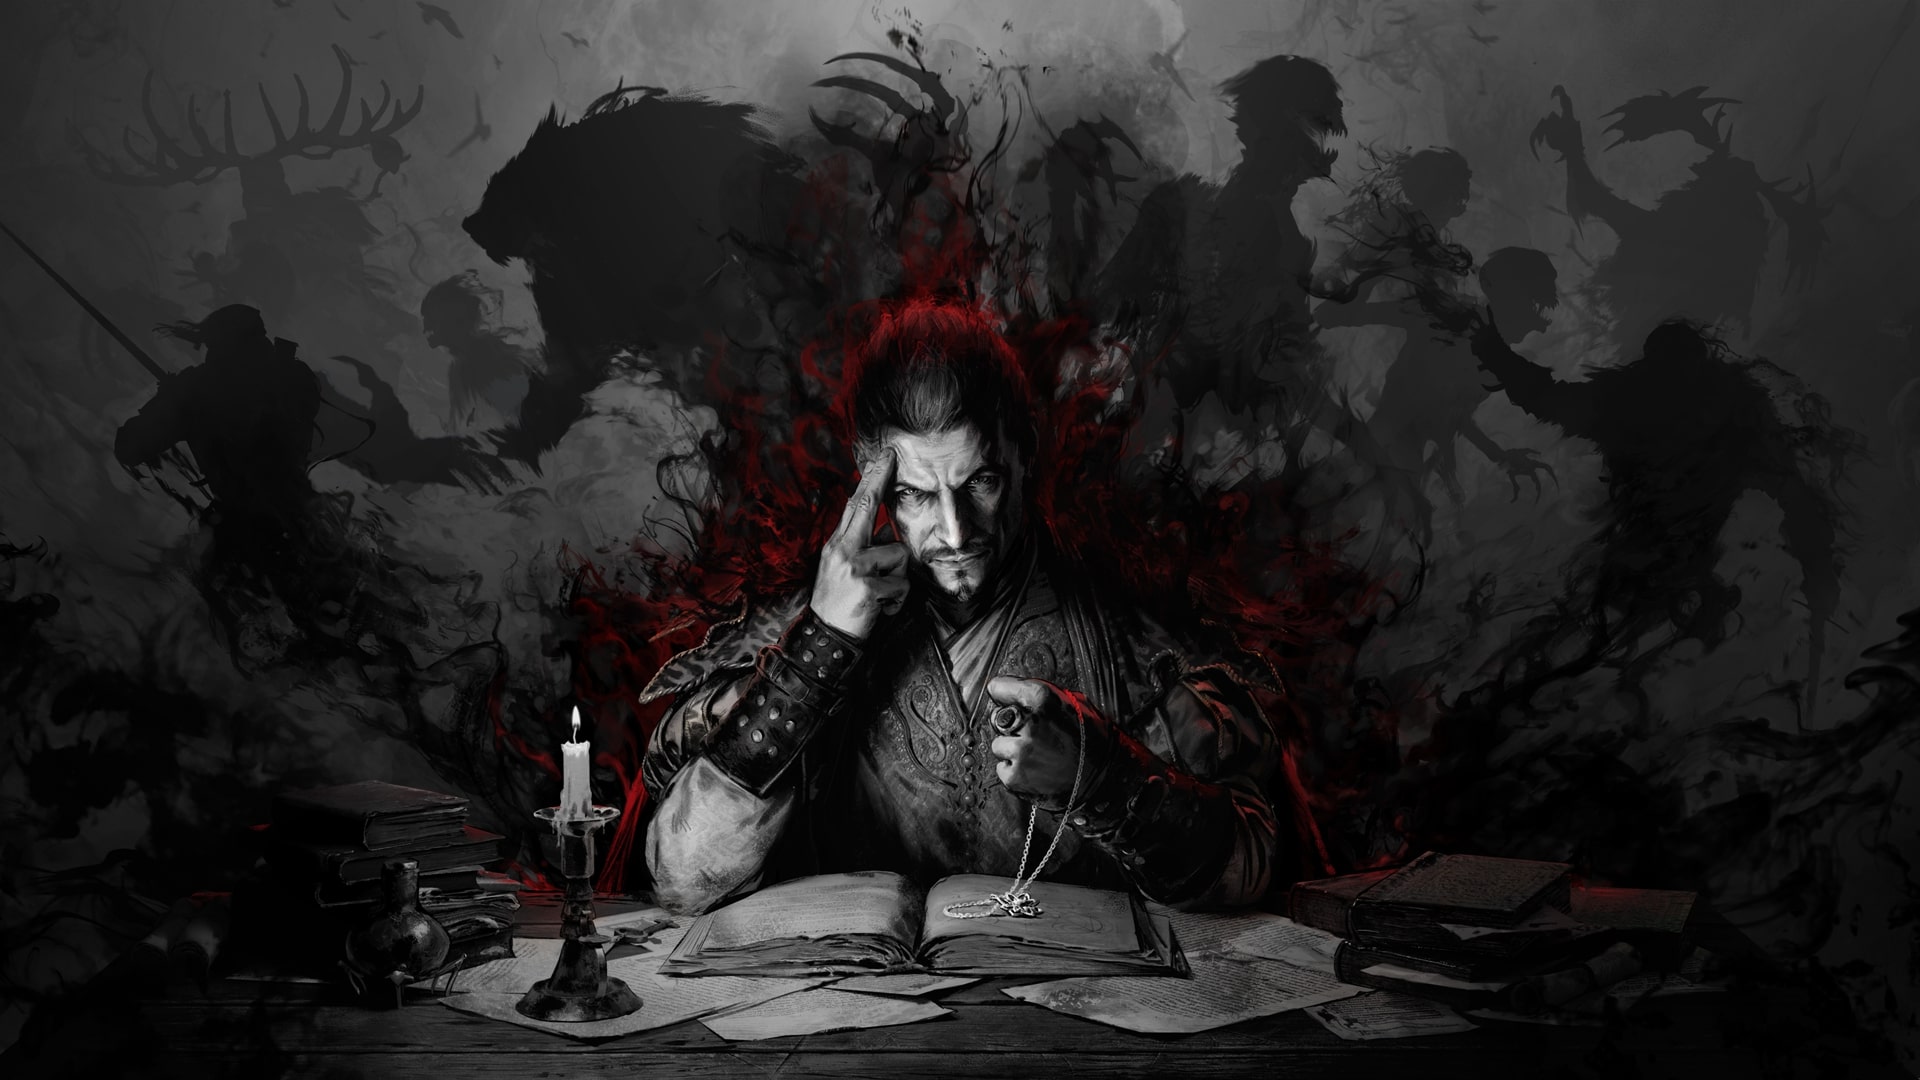 The Witcher : le nouveau jeu Gwent prévu pour 2022 se montre en images